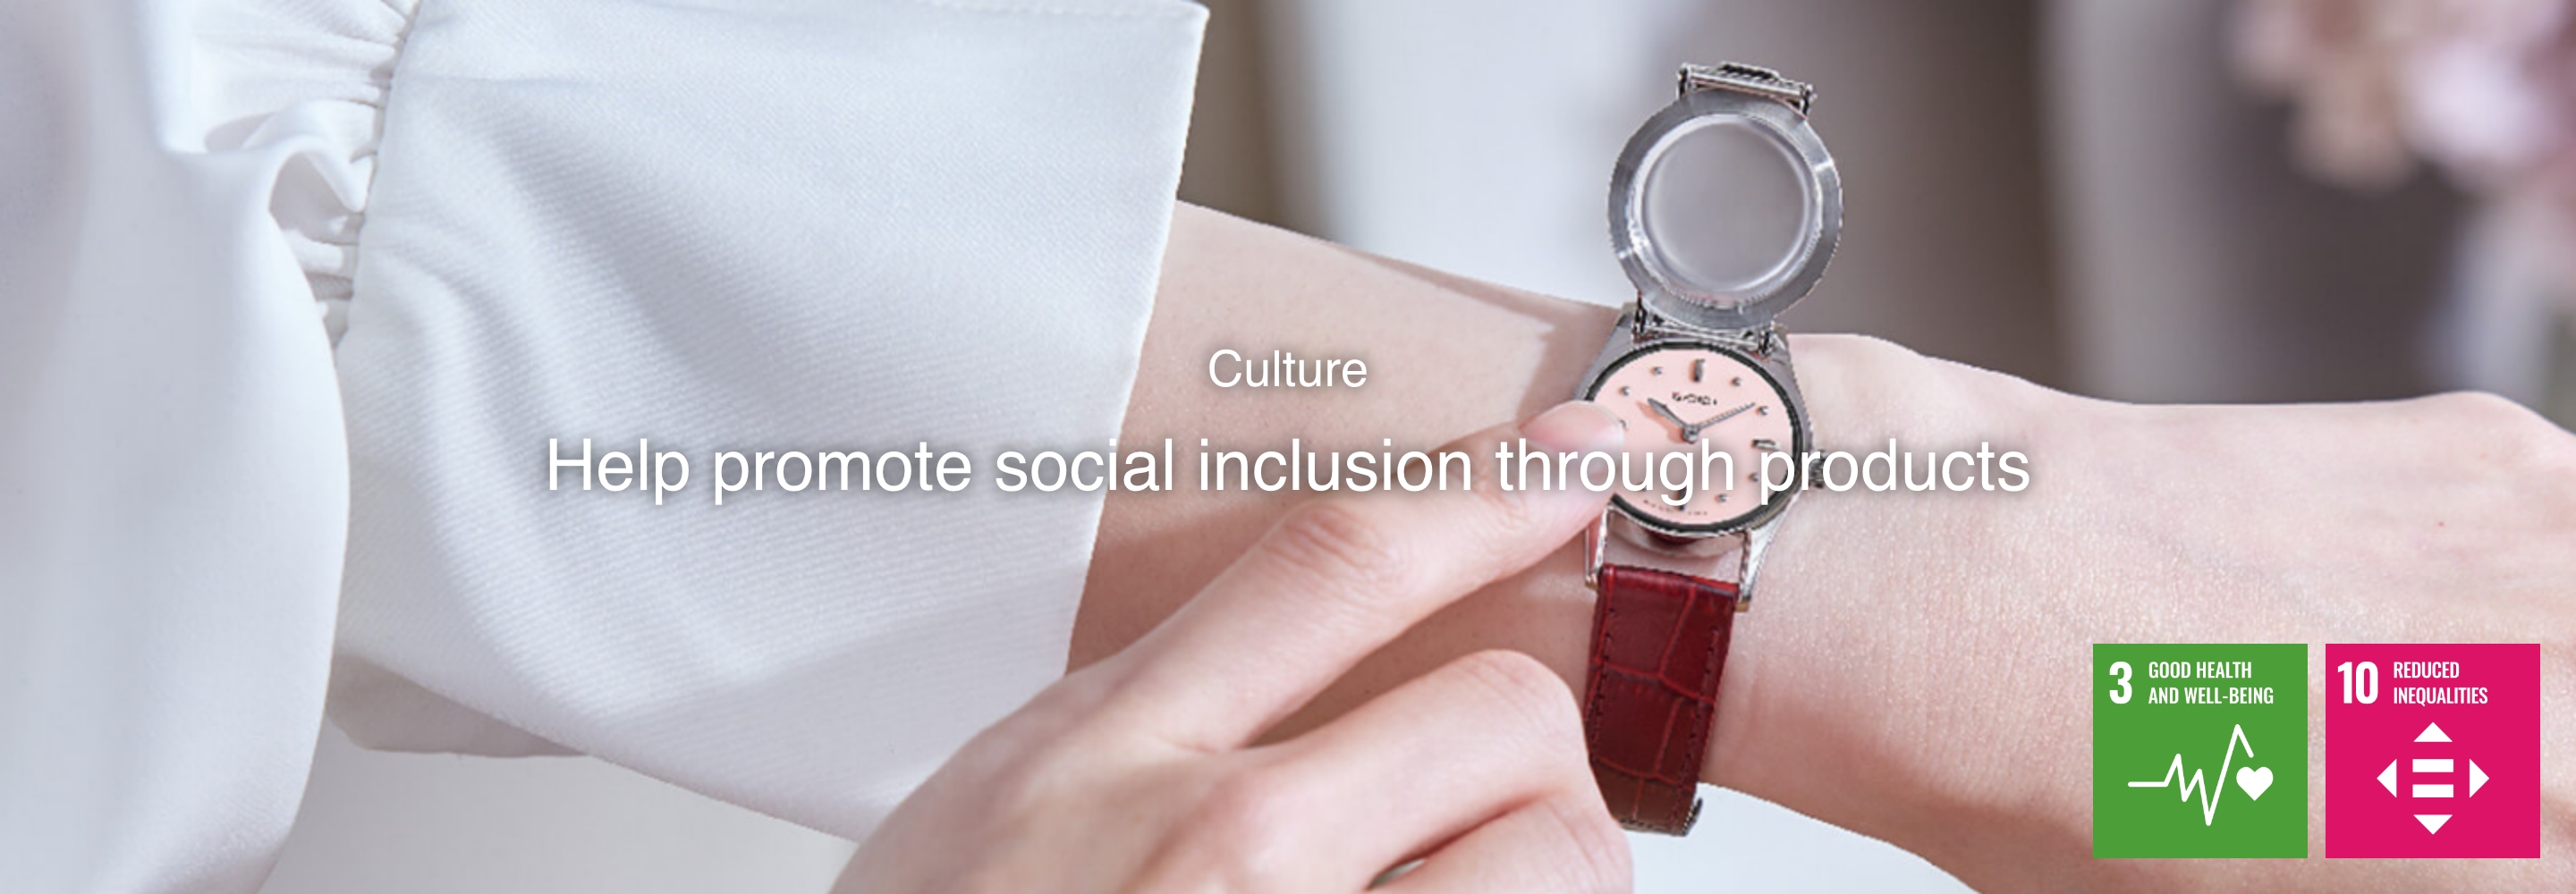 Cultuur Bijdragen aan het bevorderen van sociale inclusie met behulp van onze horloges